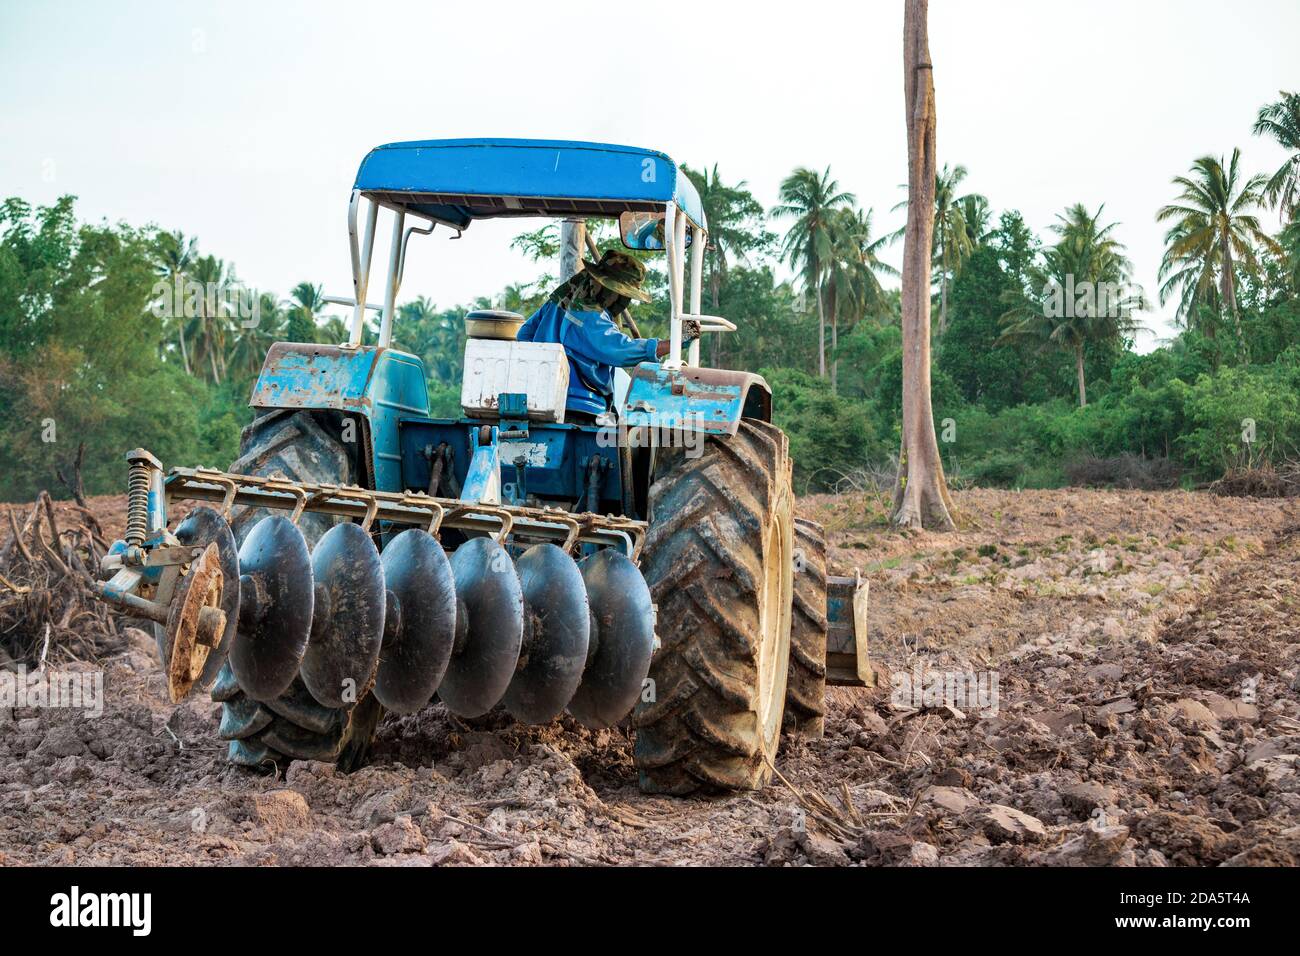 Les agriculteurs conduisent des machines agricoles sur la parcelle de terrain. Banque D'Images